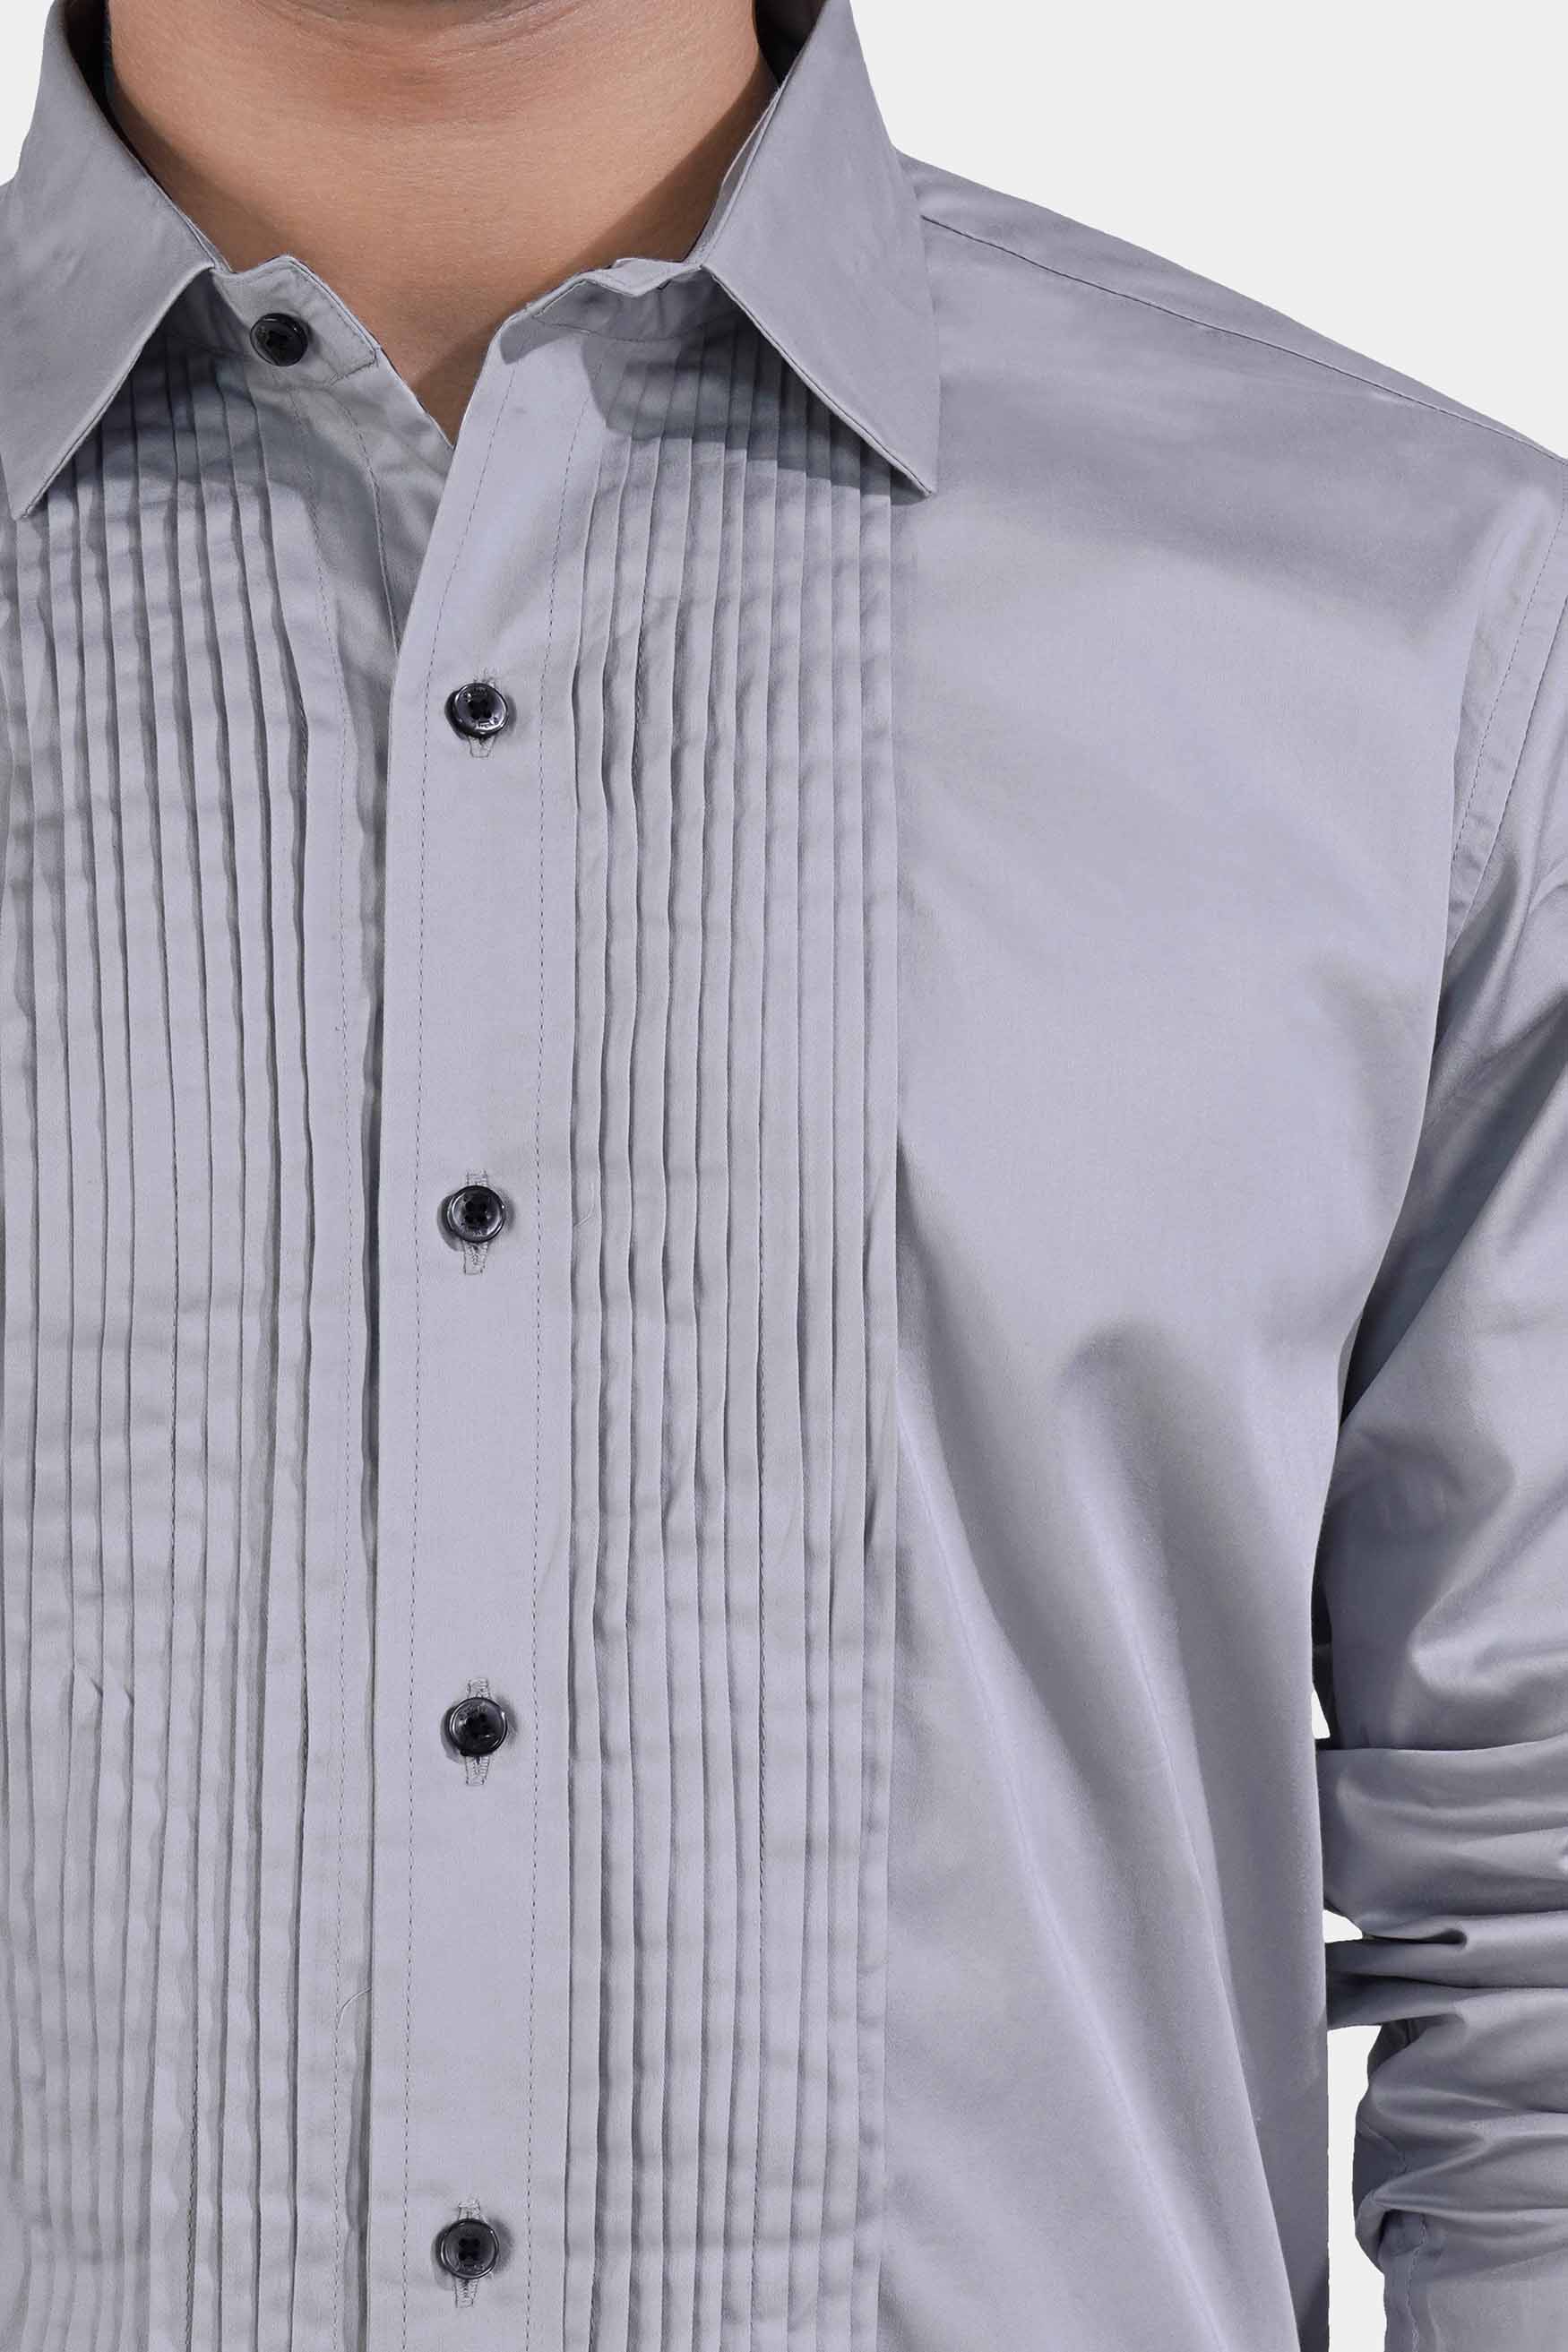 Storm Gray Subtle Sheen Super Soft Premium Cotton Tuxedo Shirt